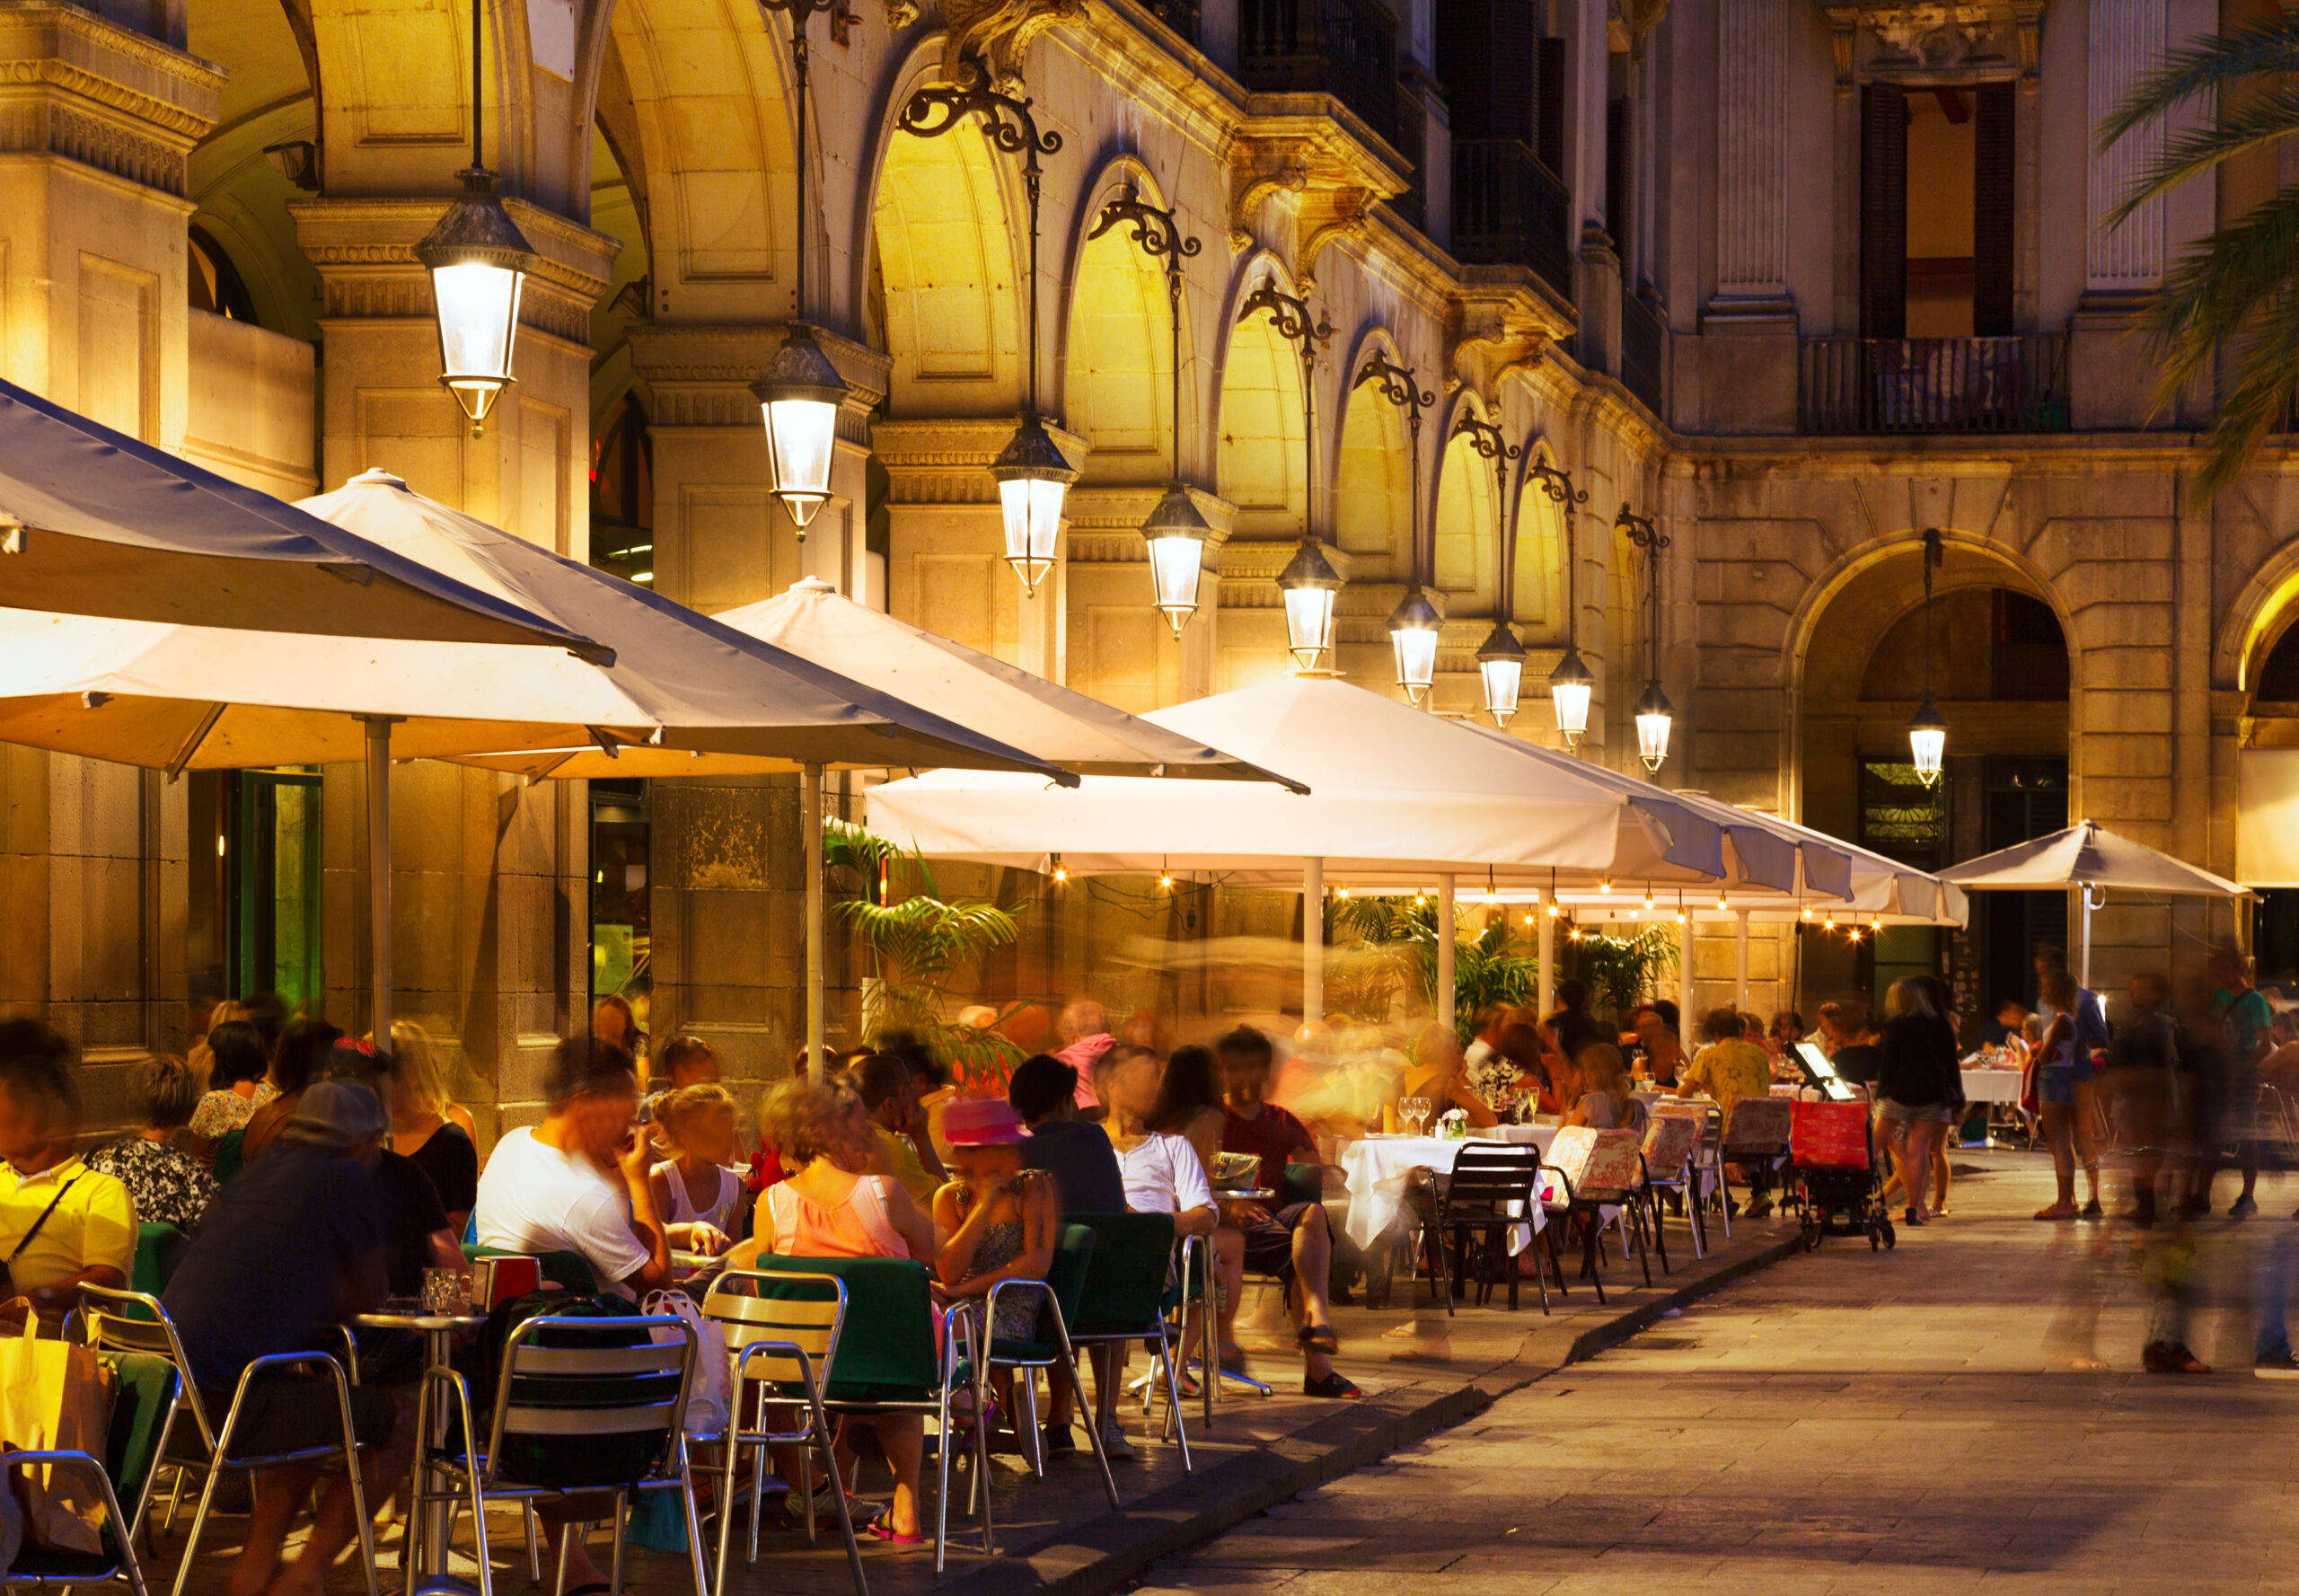 restaurants at Placa Reial Barcelona at night